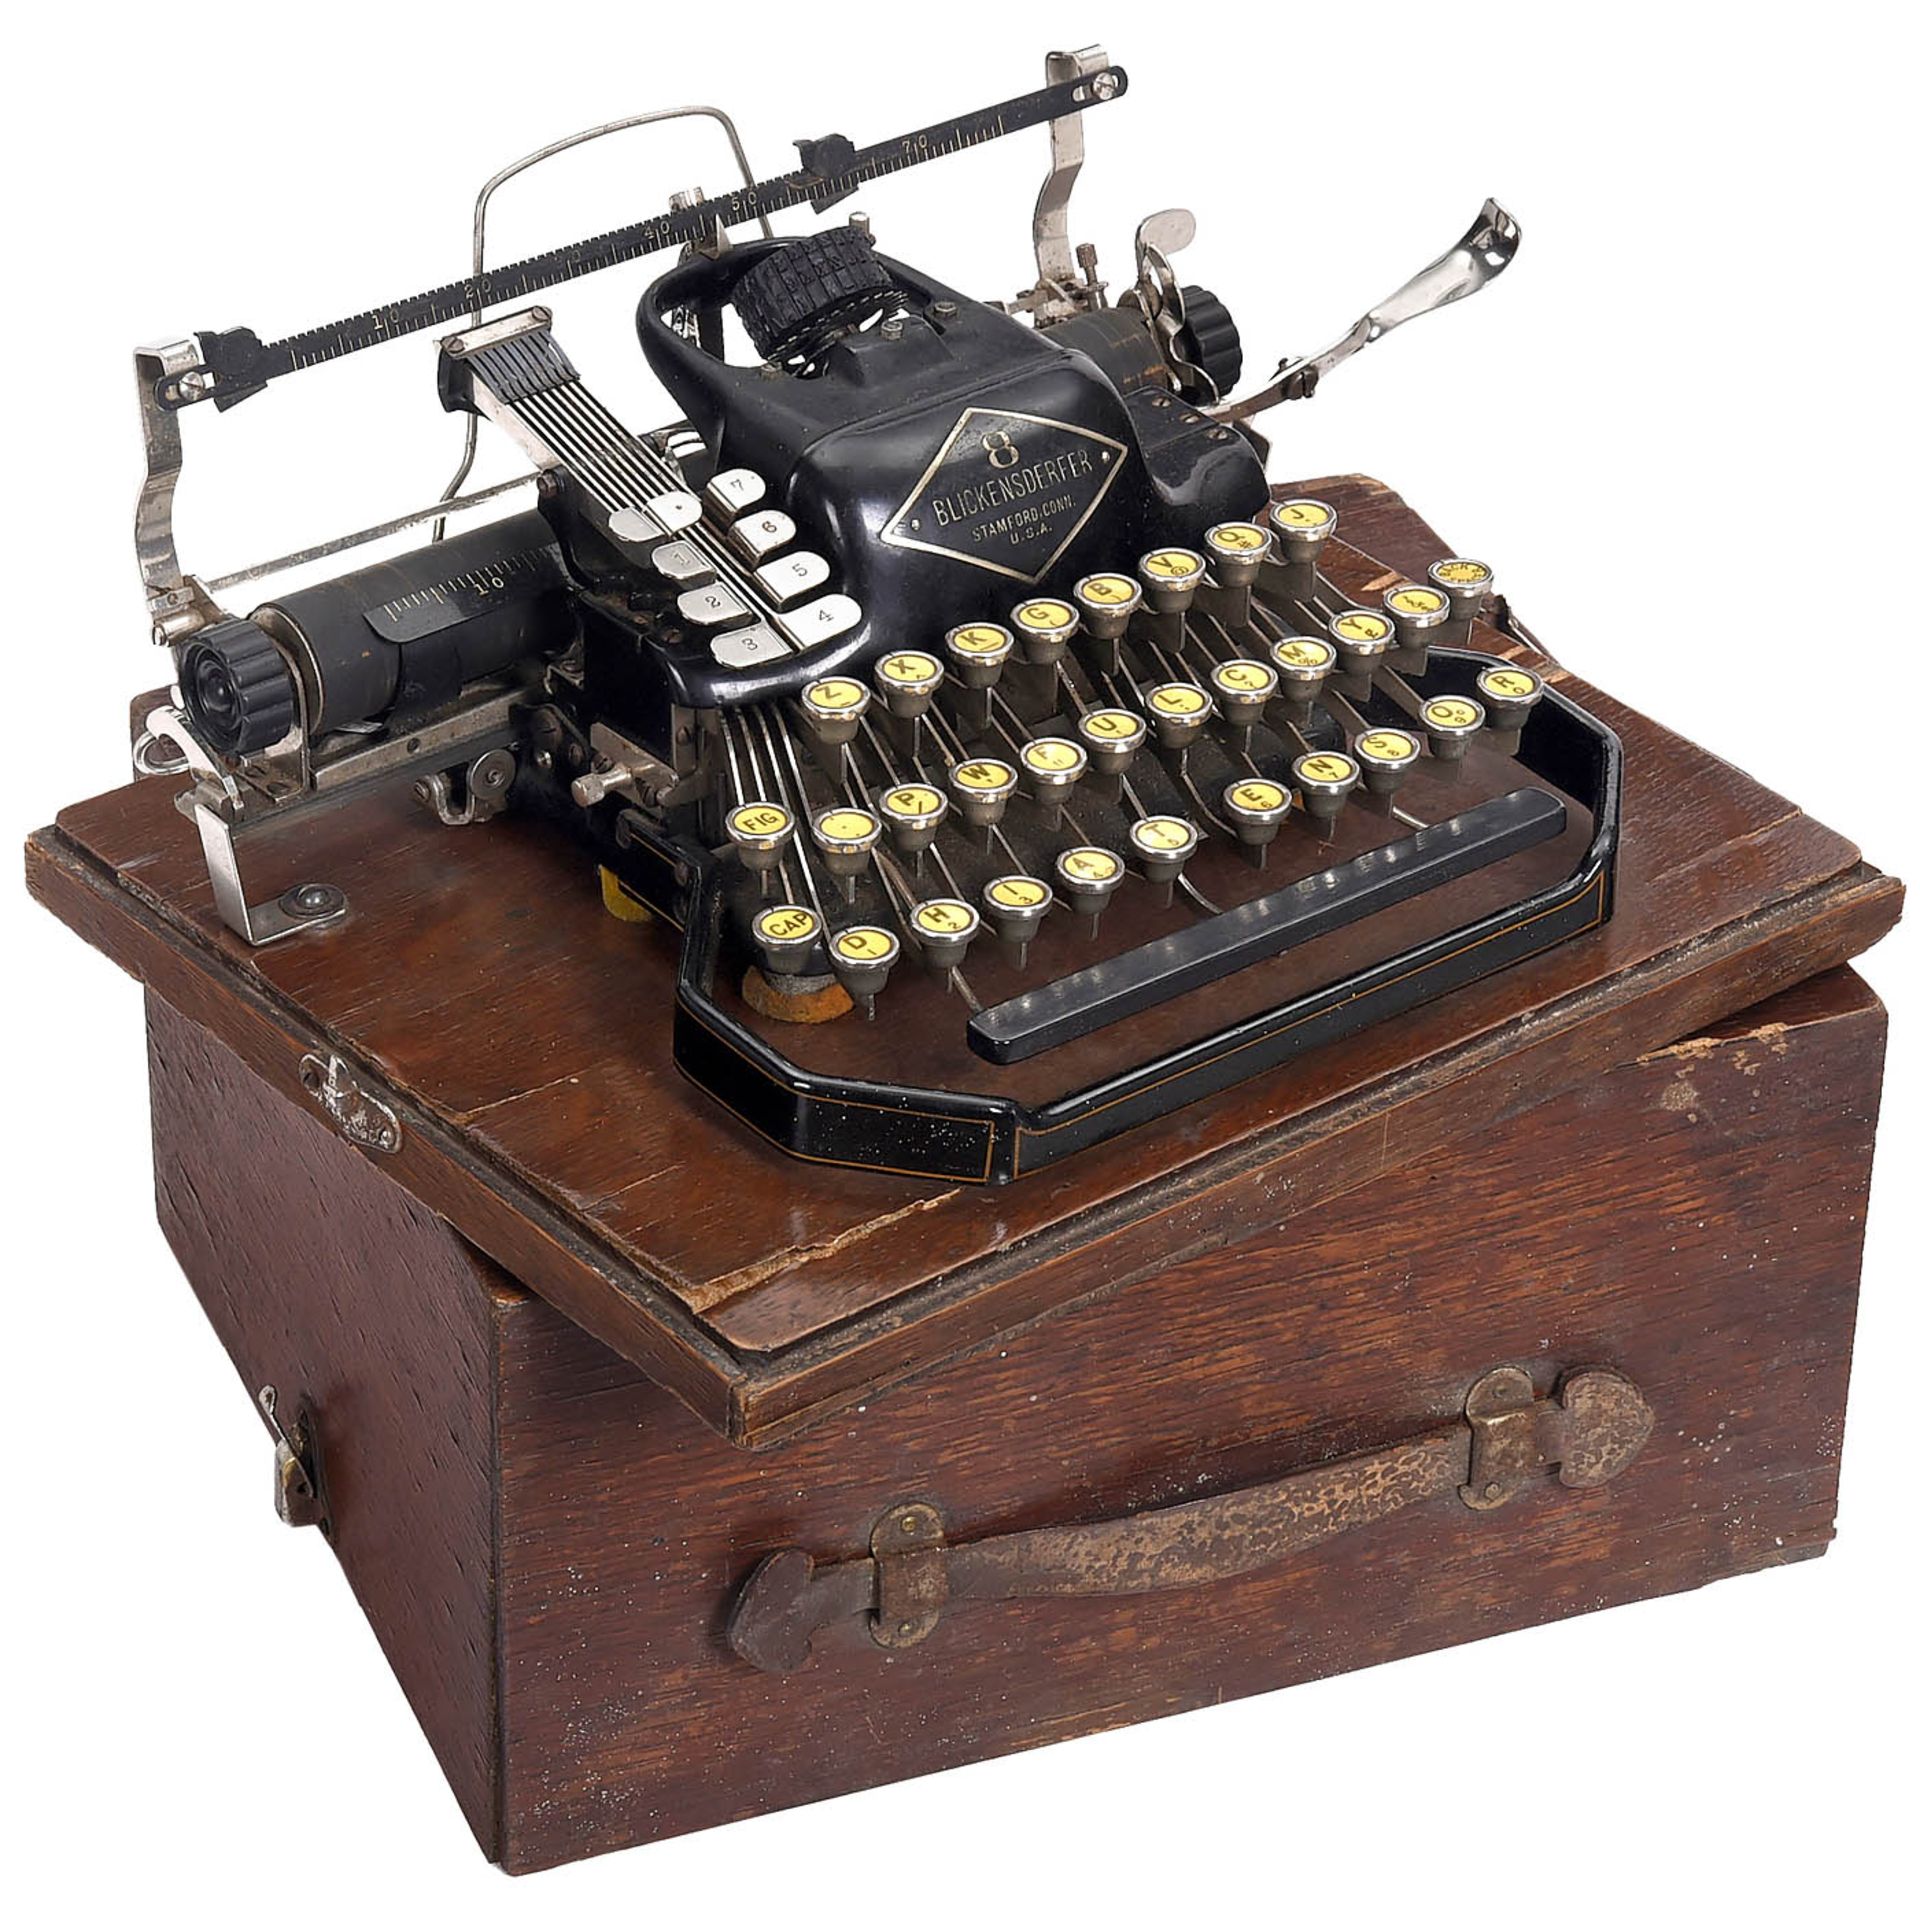 2 Blickensderfer Typewriters - Bild 2 aus 3